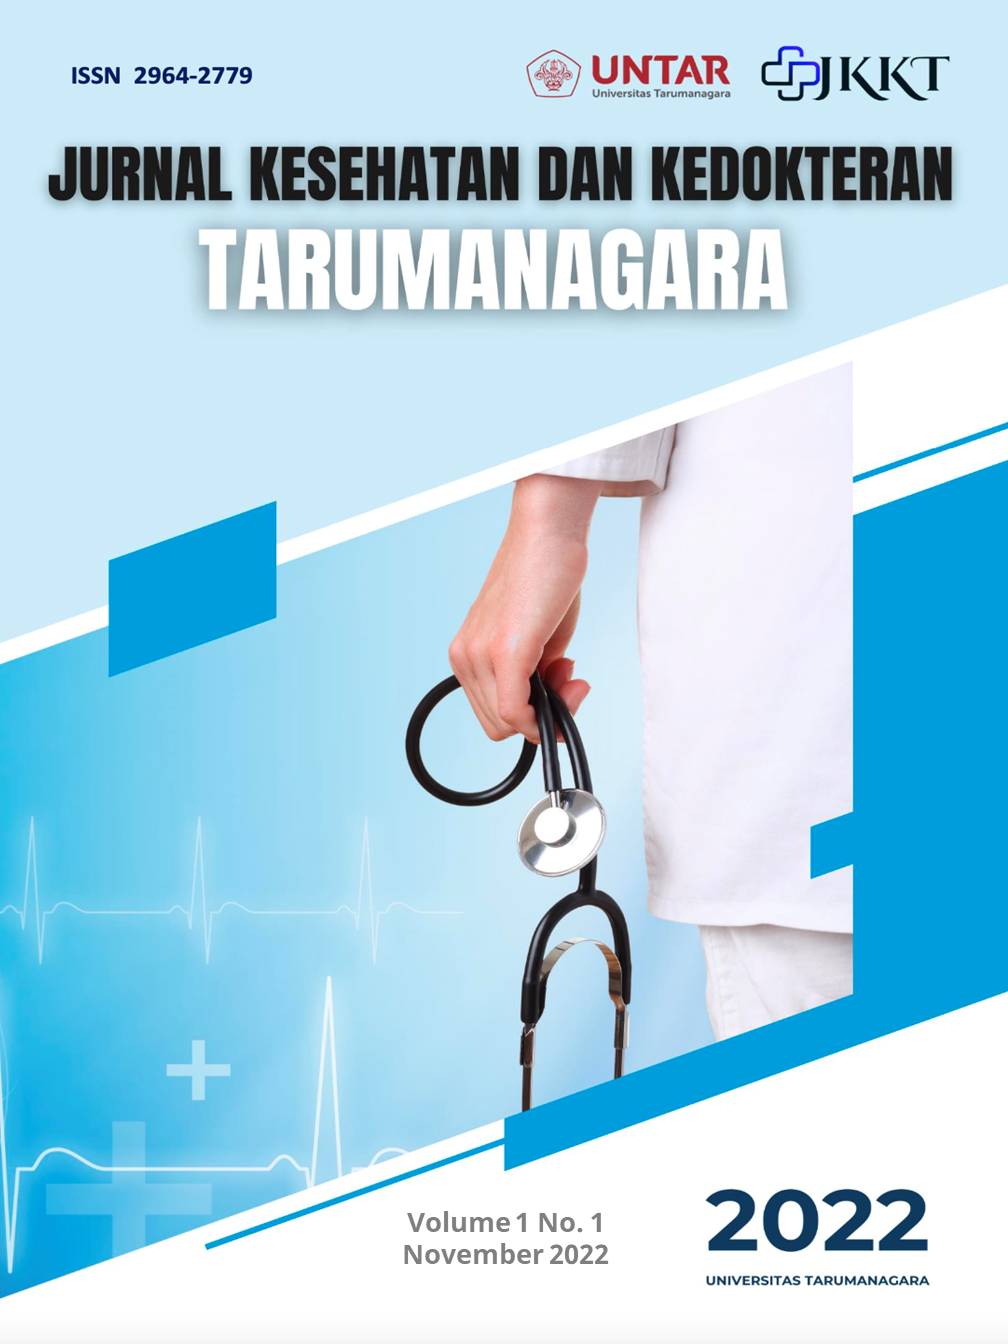 					Lihat Vol 1 No 1. (November - April) (2022): Jurnal Kesehatan dan Kedokteran Tarumanegara
				